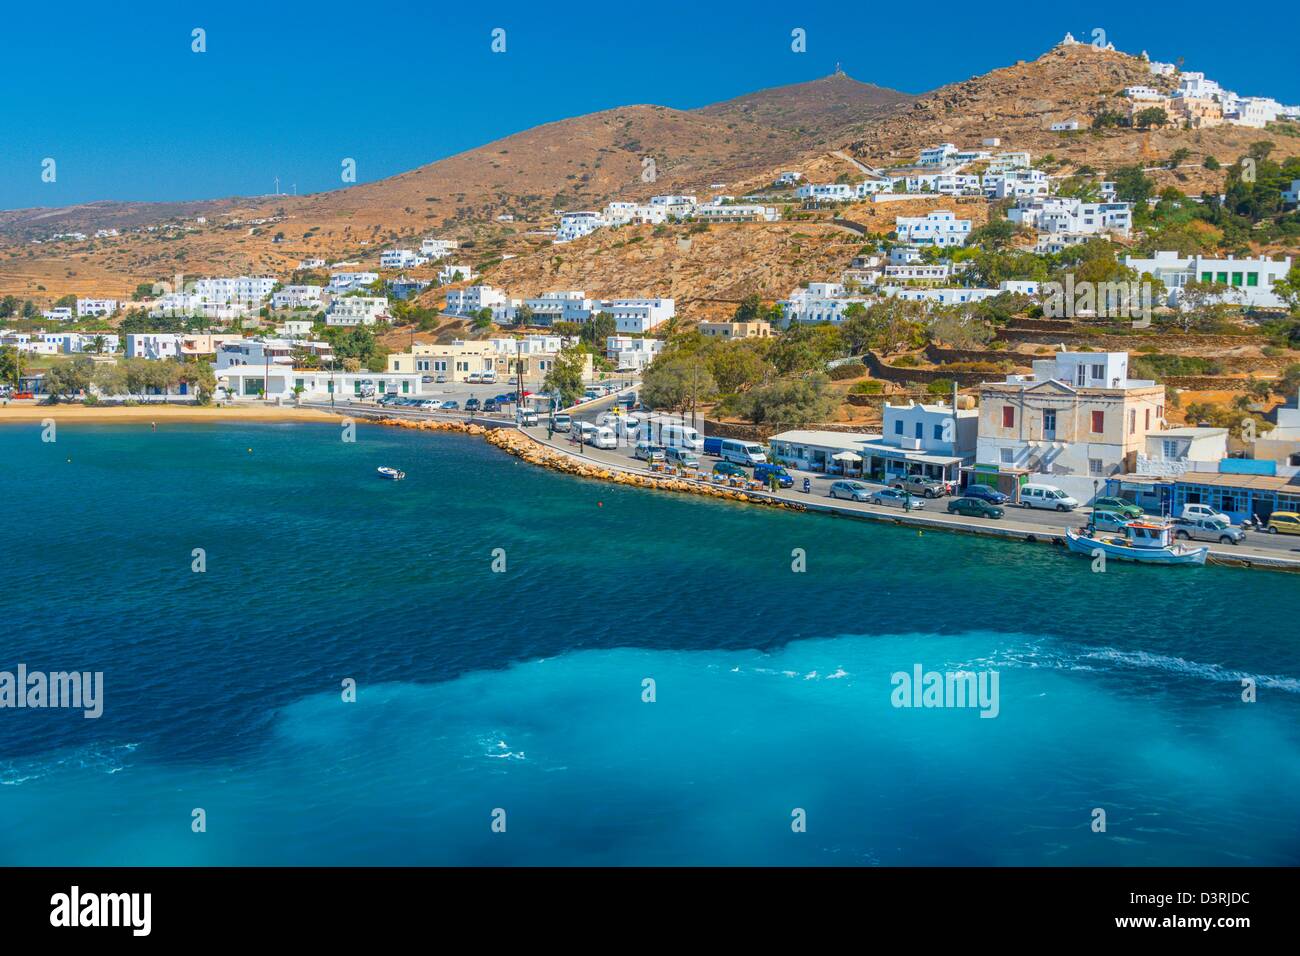 Da Atene di prendere un traghetto per visitare le isole greche, Ios è la prima fermata in viaggi attraverso il Mare Egeo Foto Stock